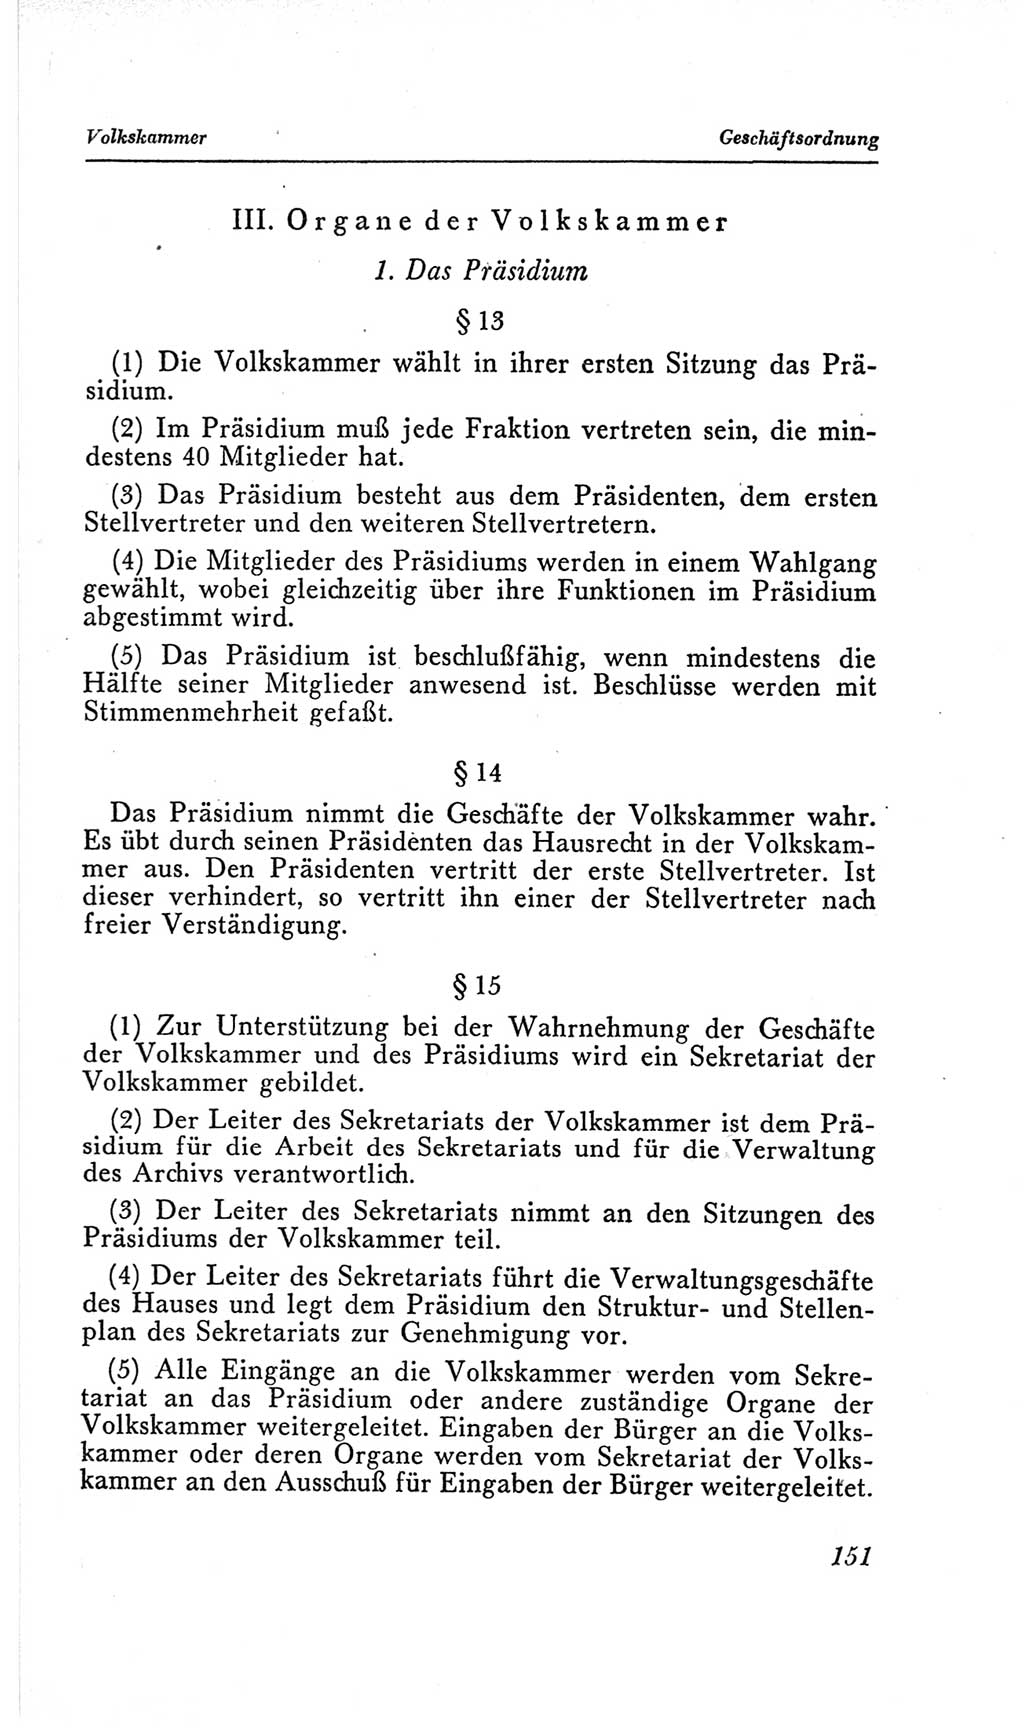 Handbuch der Volkskammer (VK) der Deutschen Demokratischen Republik (DDR), 2. Wahlperiode 1954-1958, Seite 151 (Hdb. VK. DDR, 2. WP. 1954-1958, S. 151)